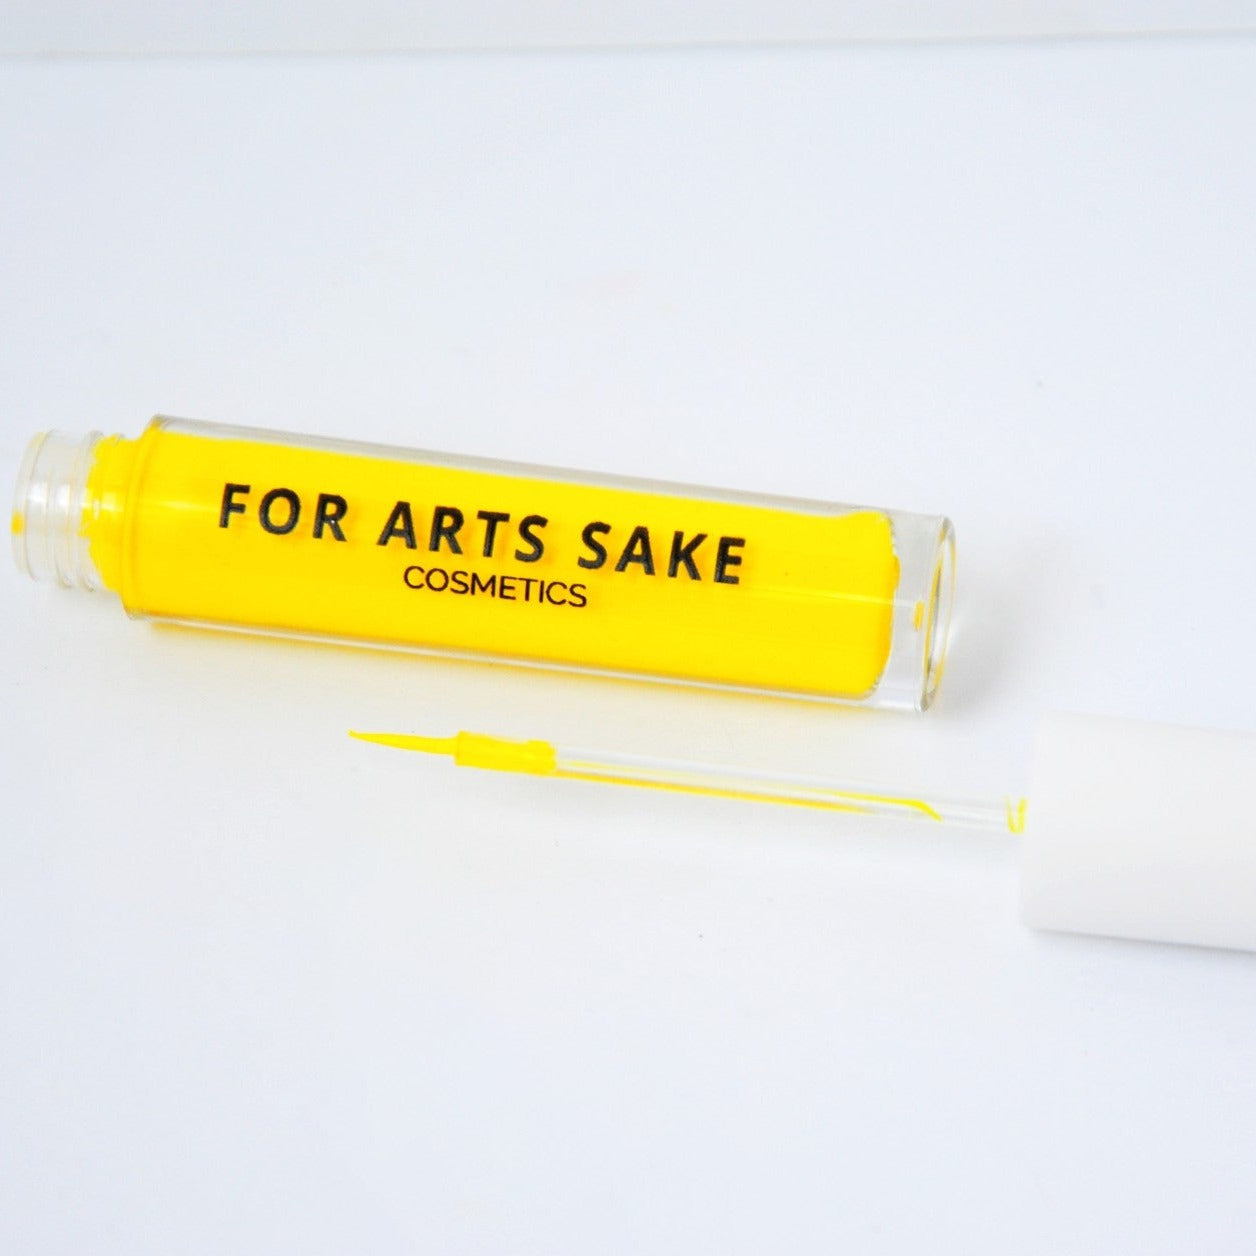 Joy - Water Activated Eyeliner (Neon Yellow) – Arttitude Cosmetics